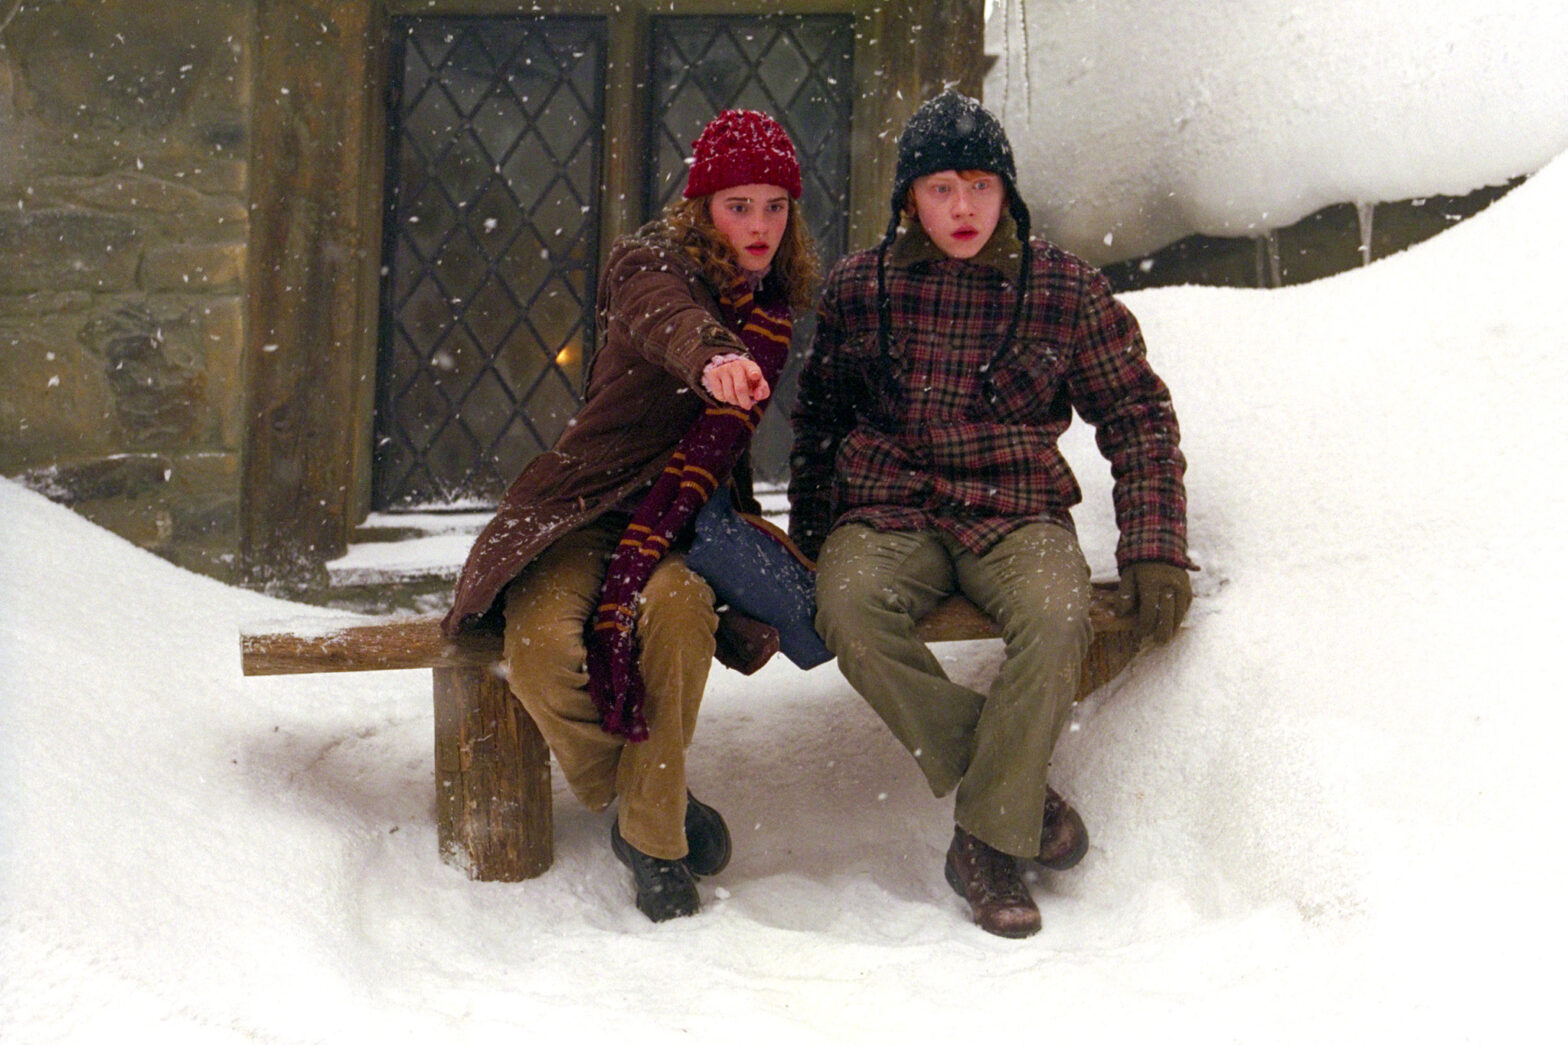 Ron Weasley und Hermine Granger, gespielt von Rupert Grint und Emma Watson, in einer stimmungsvollen Szene in Hogsmeade, eingehüllt in eine malerische Schneelandschaft – ein Bild, das die gemütliche und zauberhafte Atmosphäre des Winters in der Harry Potter-Welt einfängt.